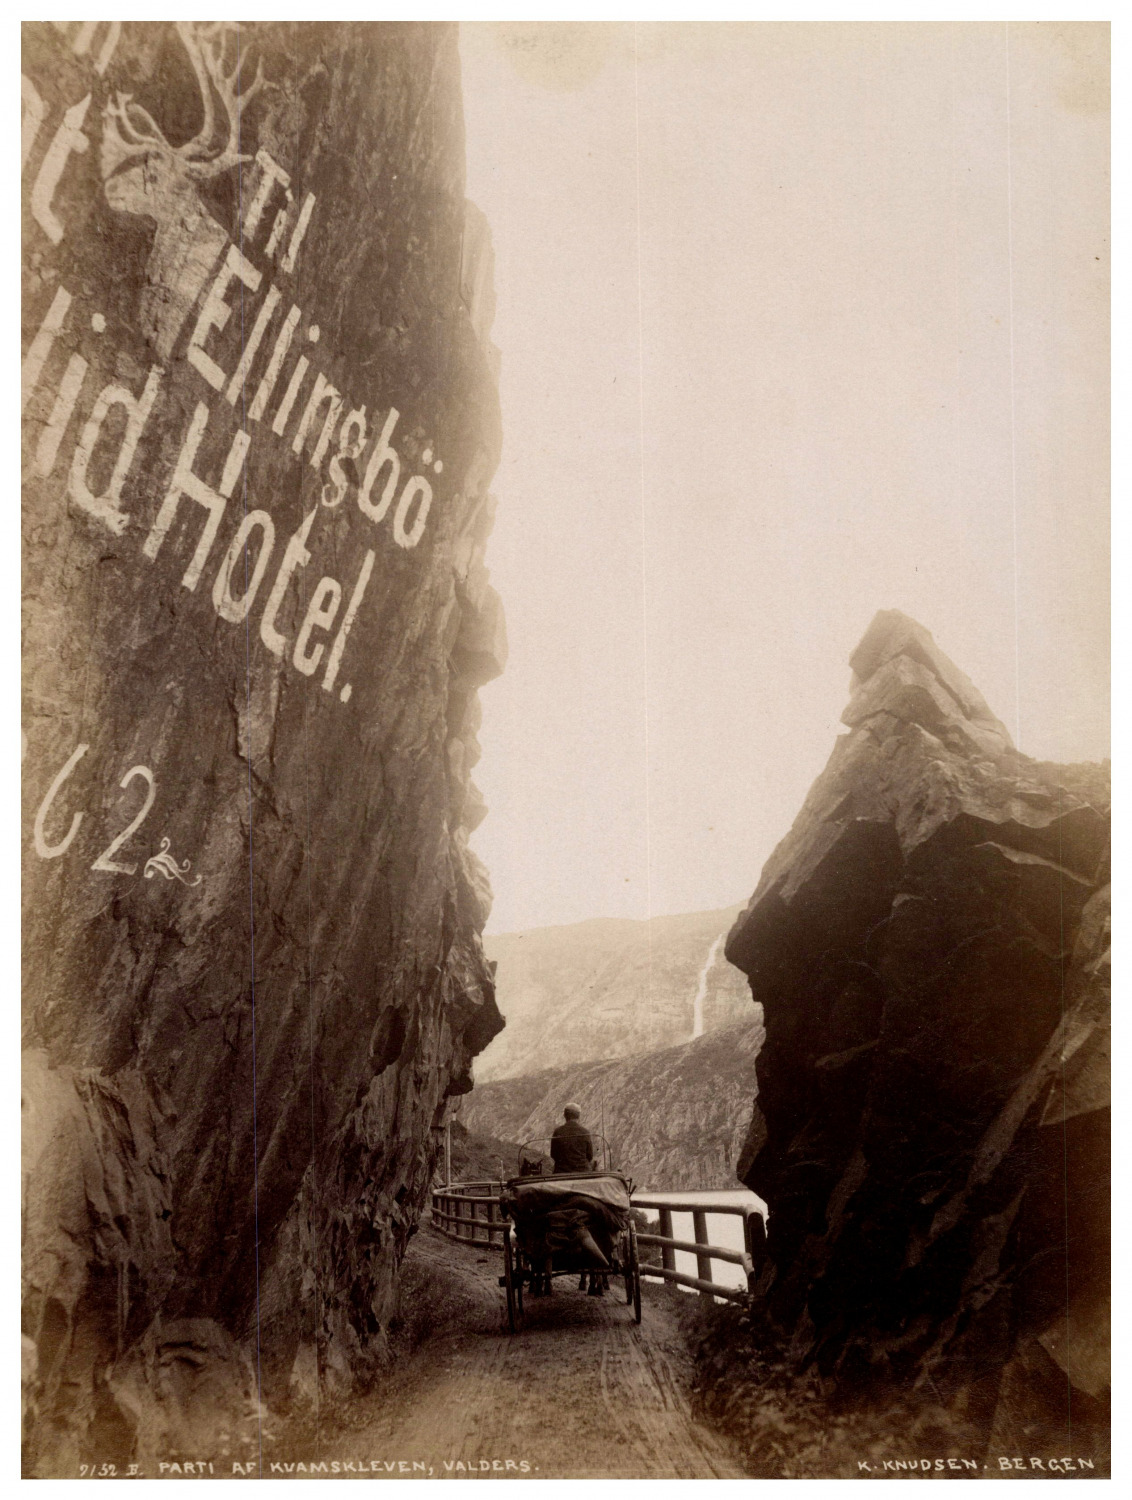 Norway, Parti af Kvamskleven, Valders, photo. K. Knudsen Vintage Print, Tirag